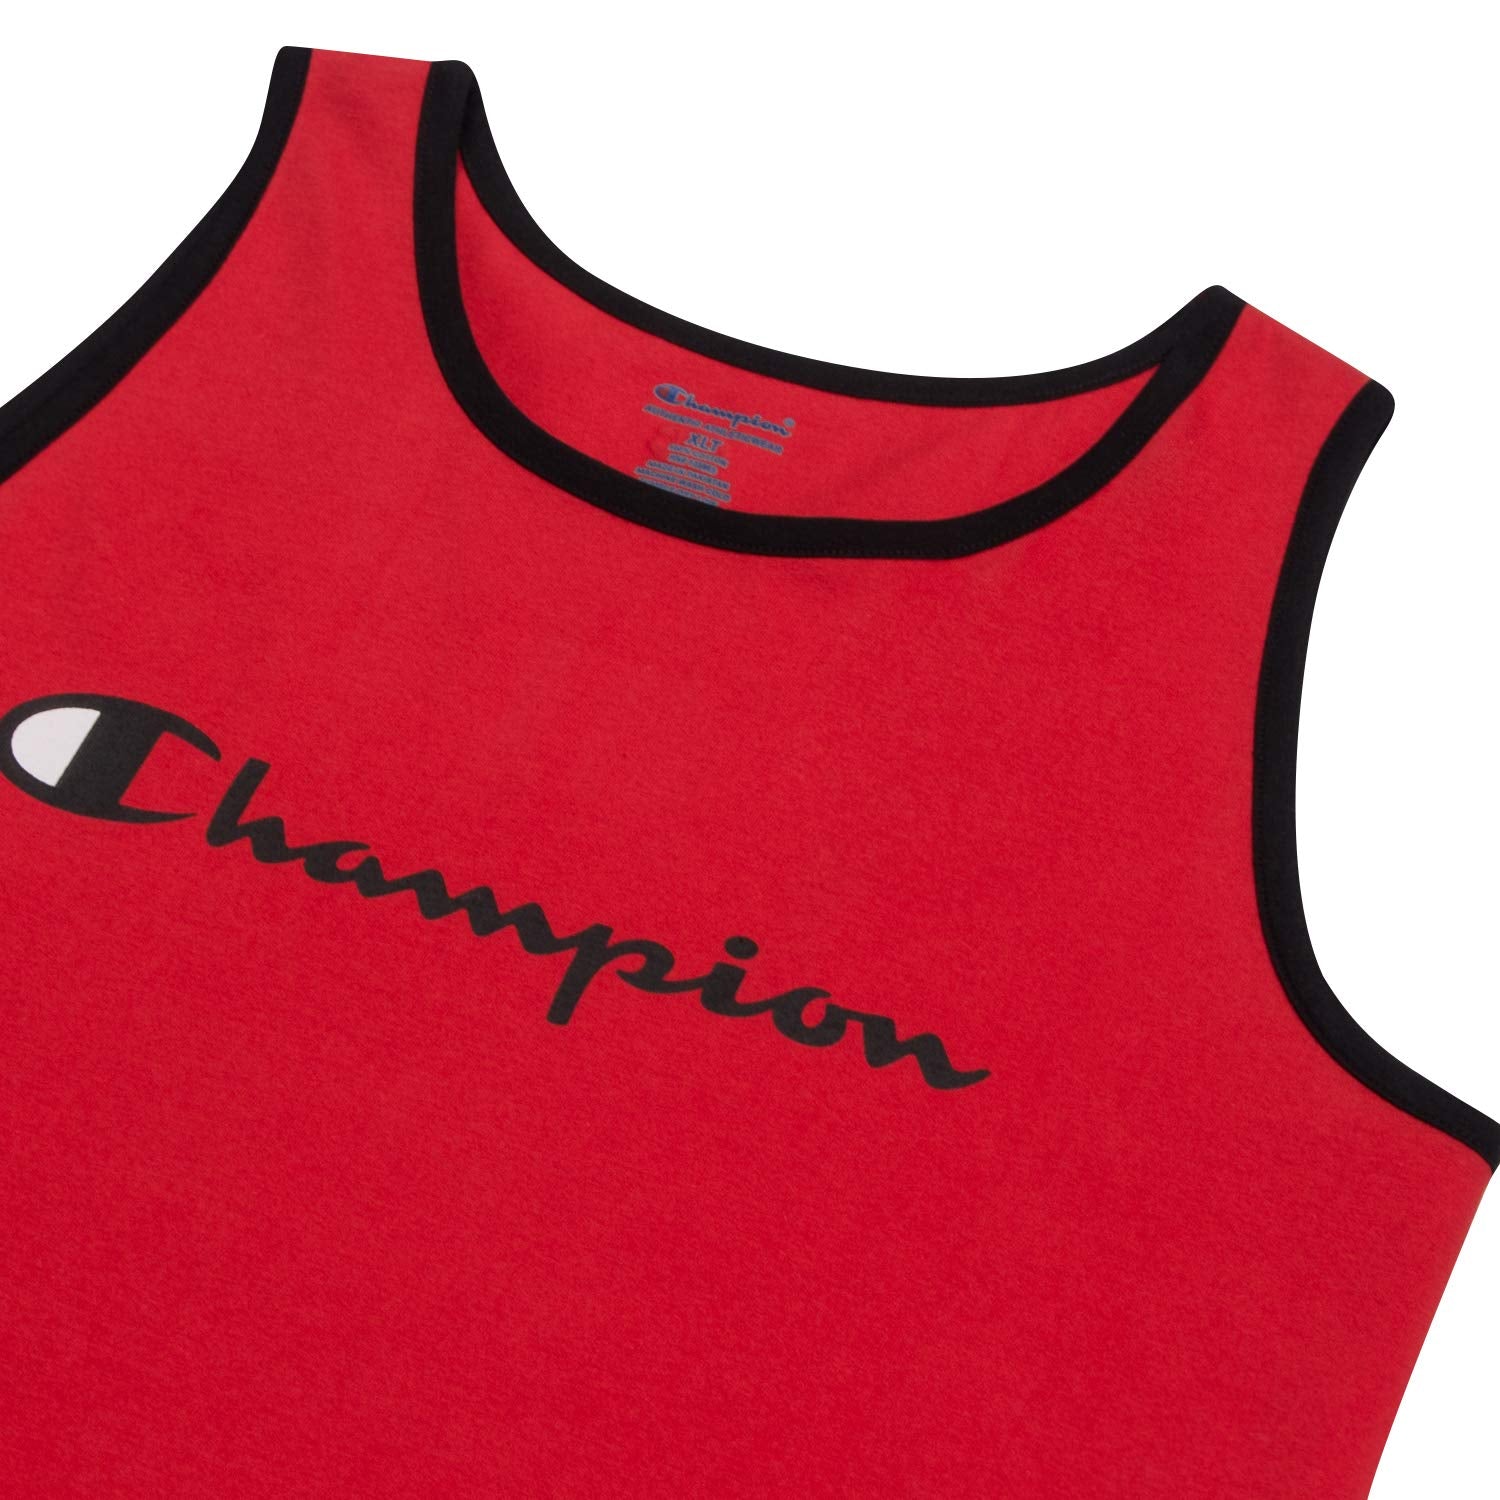 Champion Men's Tank Top - Black - XL